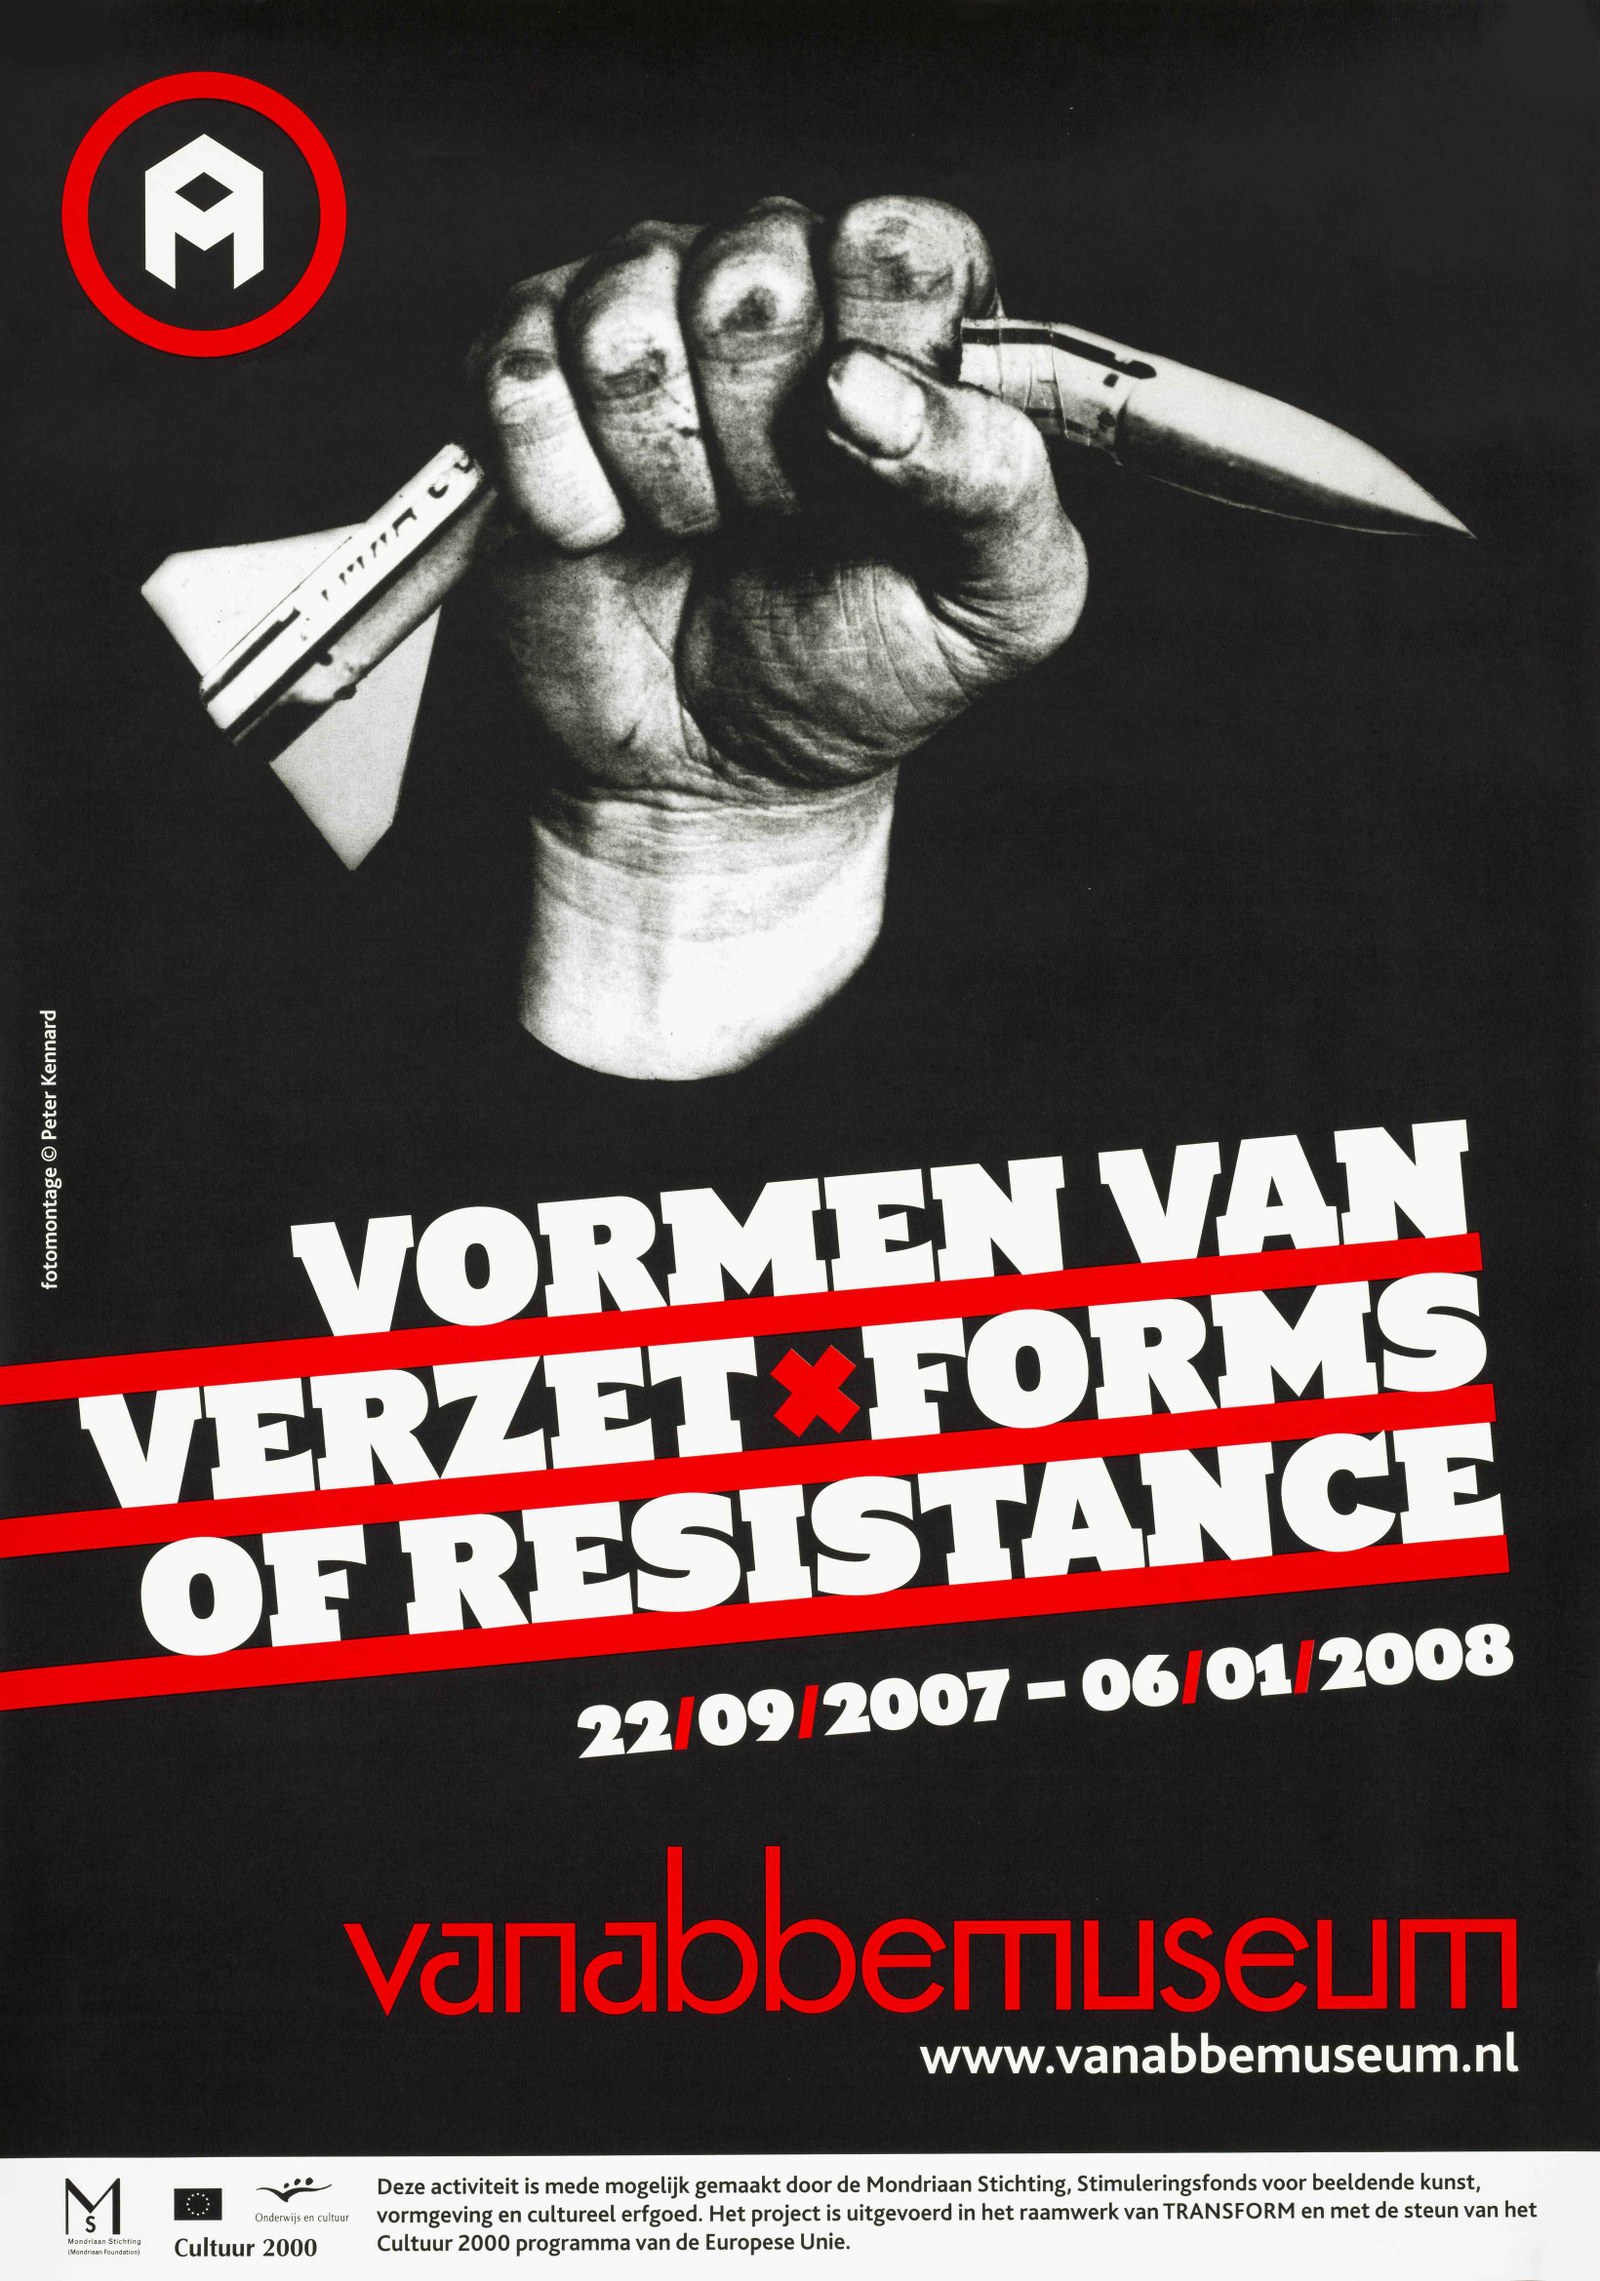 https://mediabank.vanabbemuseum.nl/vam/files/alexandria/affiches/055.jpg